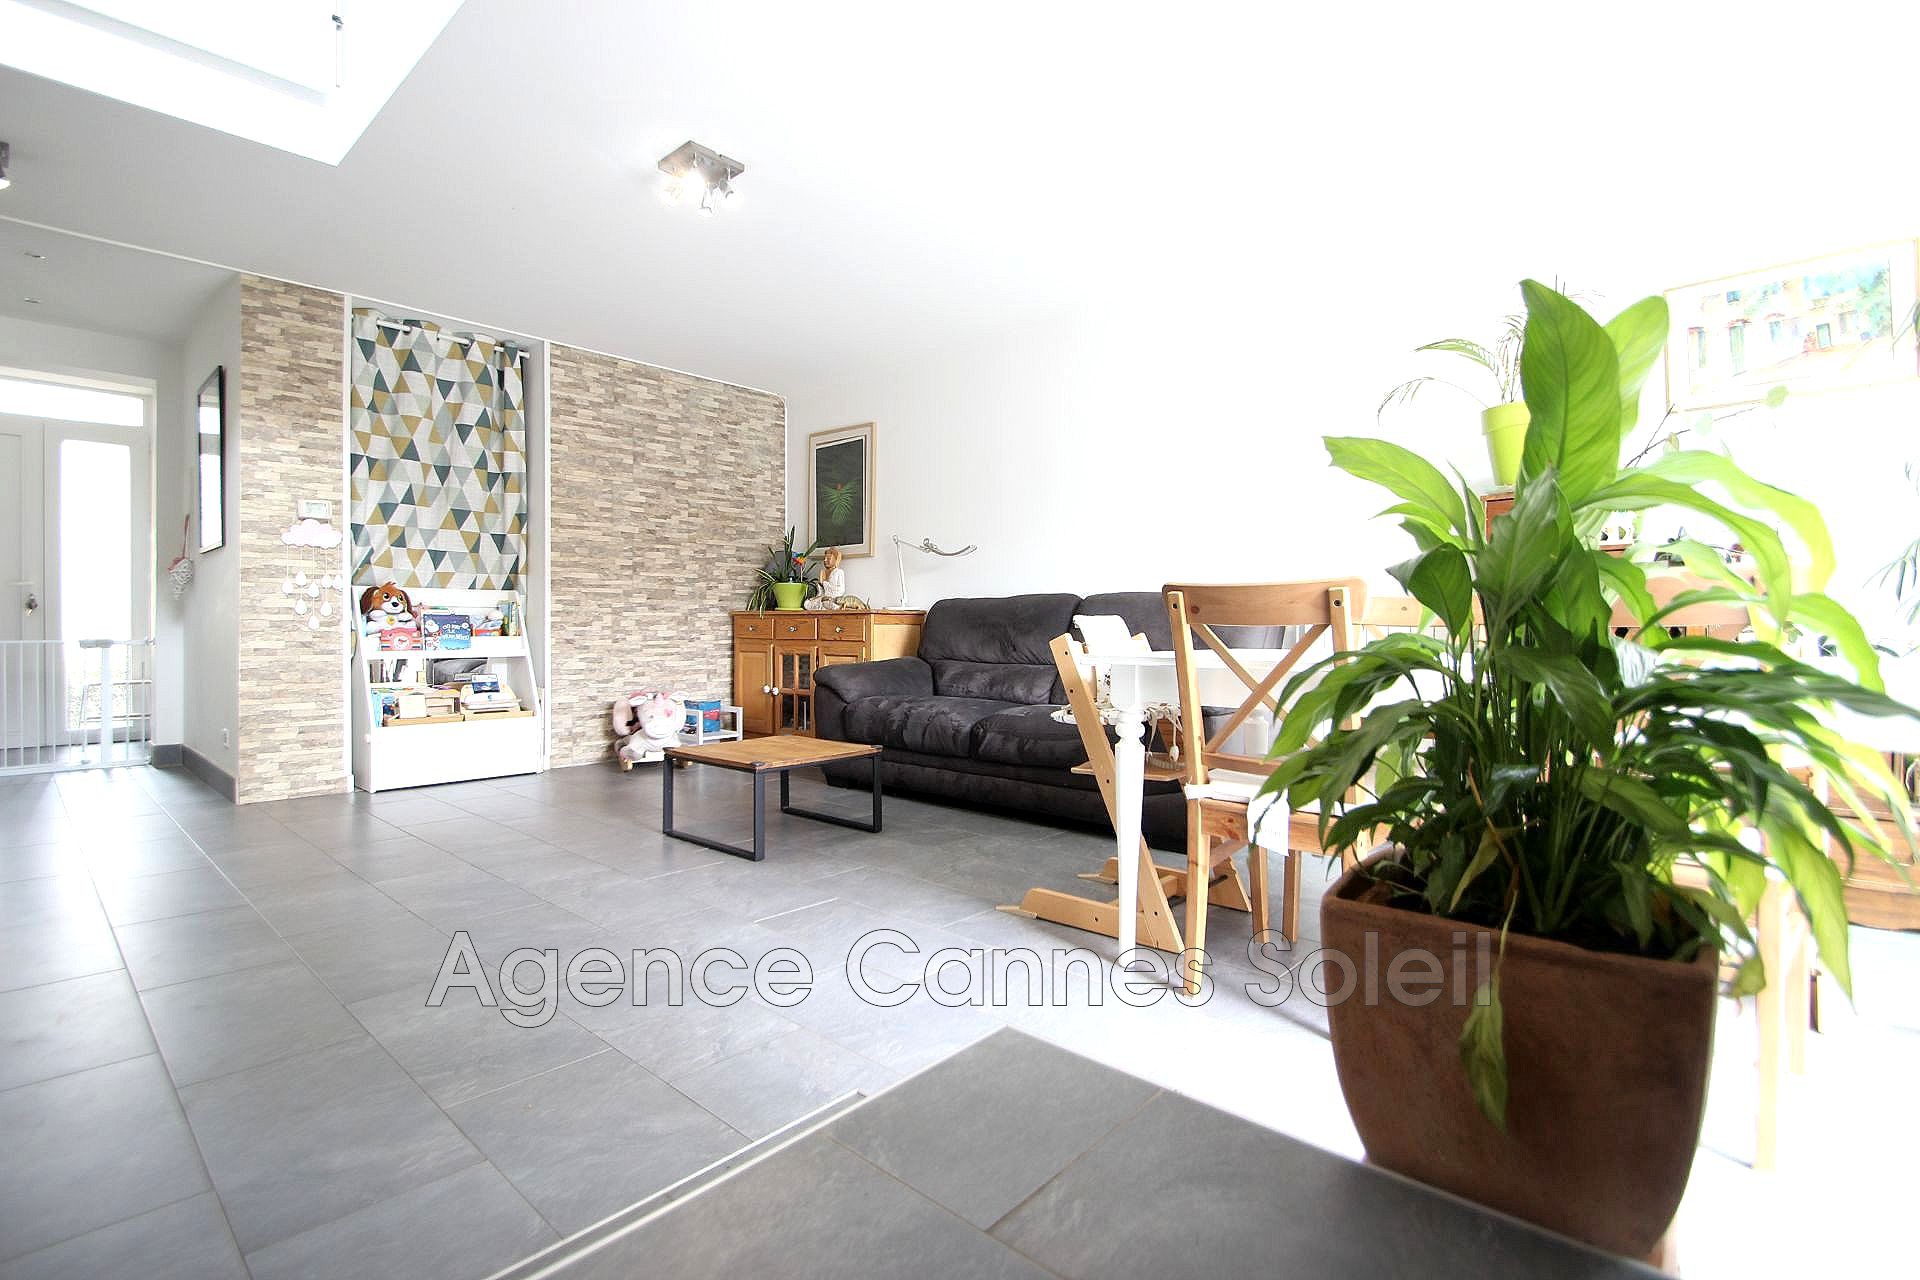 Vente Maison 107m² à La Roquette-sur-Siagne (06550) - Cannes Soleil